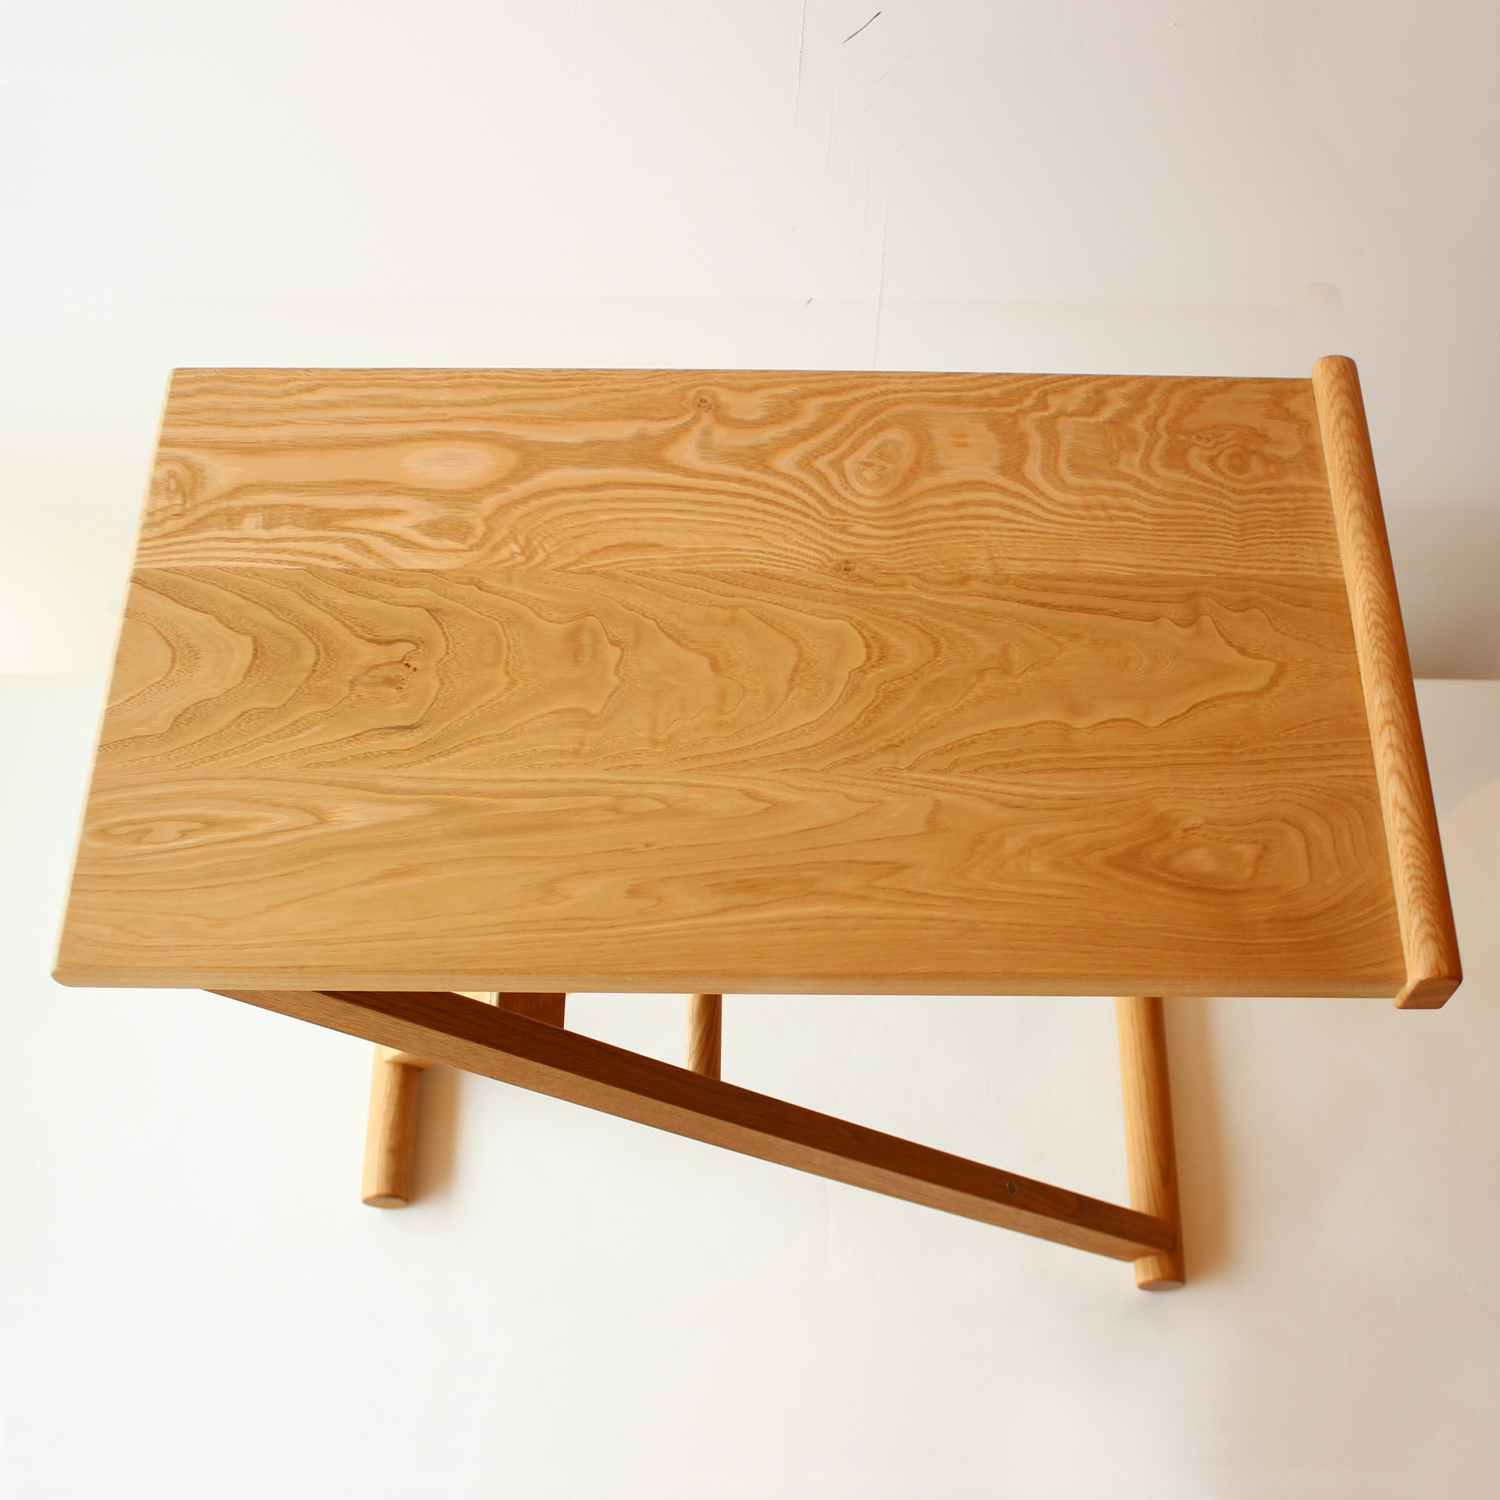 OAK VILLAGE/折りたたみサイドテーブル